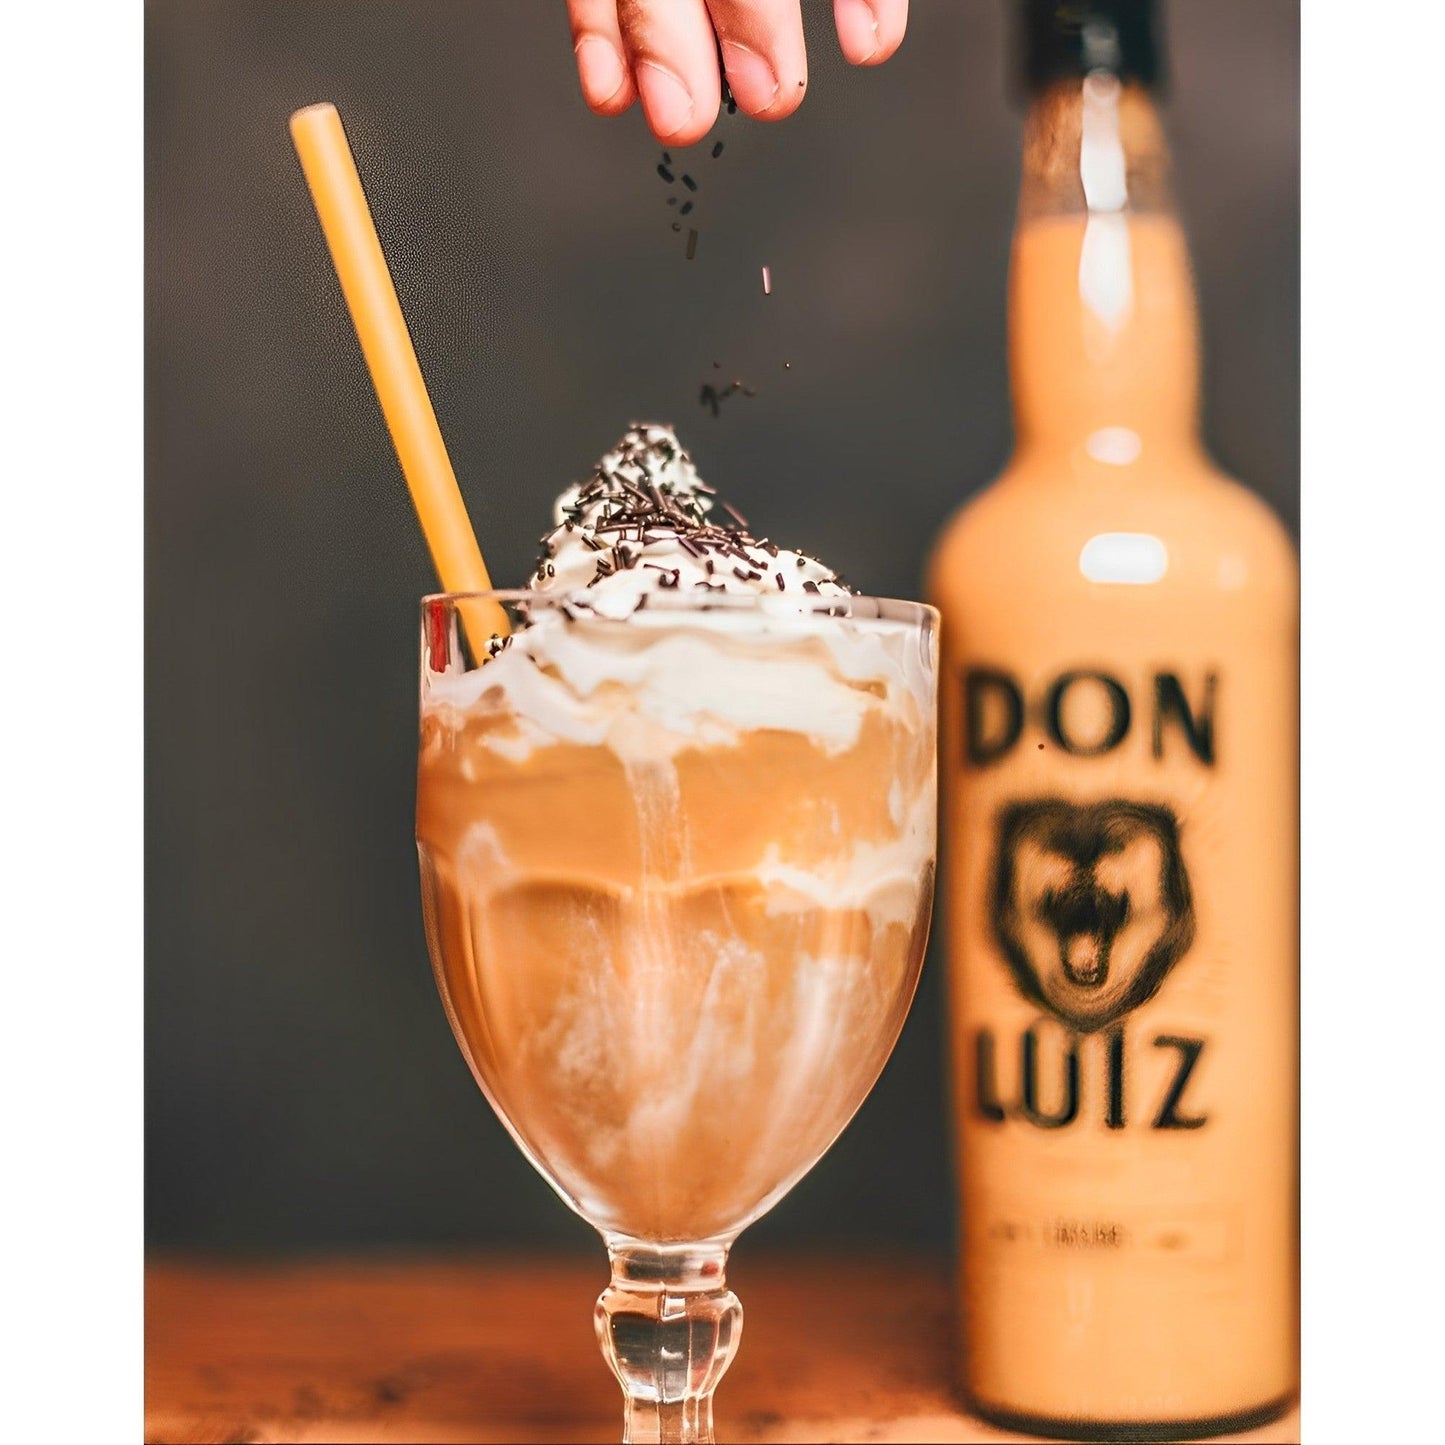 Don Luiz Liqueur - Dulce de Leche Cream 700ml - Authentic Brazilian Drink - Brazilian Shop